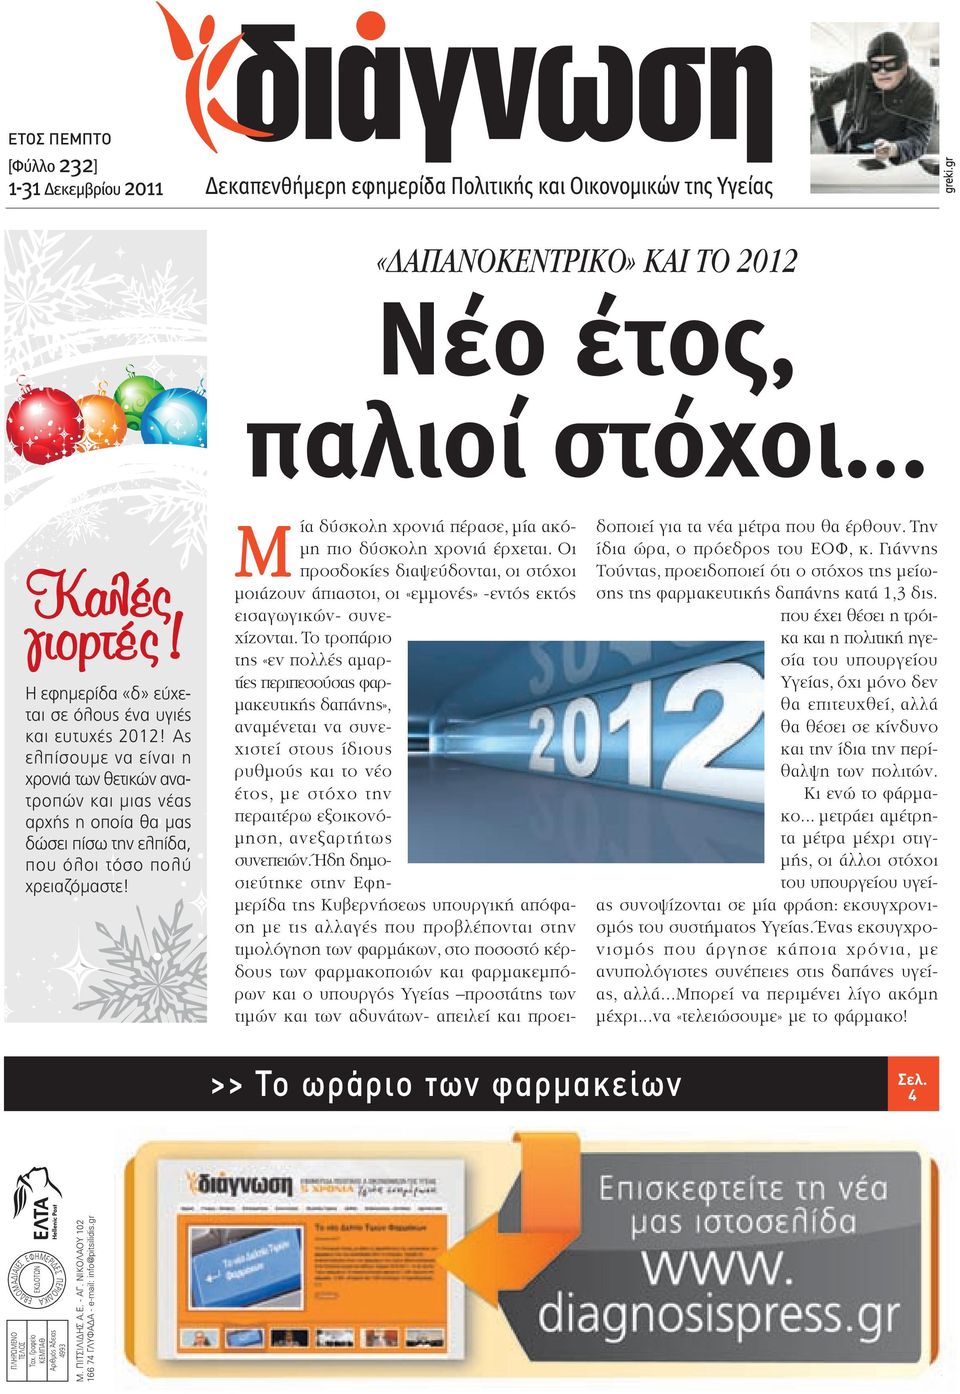 ΝΙΚΟΛΑΟΥ 102 166 74 ΓΛΥΦΑΔΑ - e-mail: info@pitsilidis.gr Η εφημερίδα «δ» εύχεται σε όλους ένα υγιές και ευτυχές 2012!